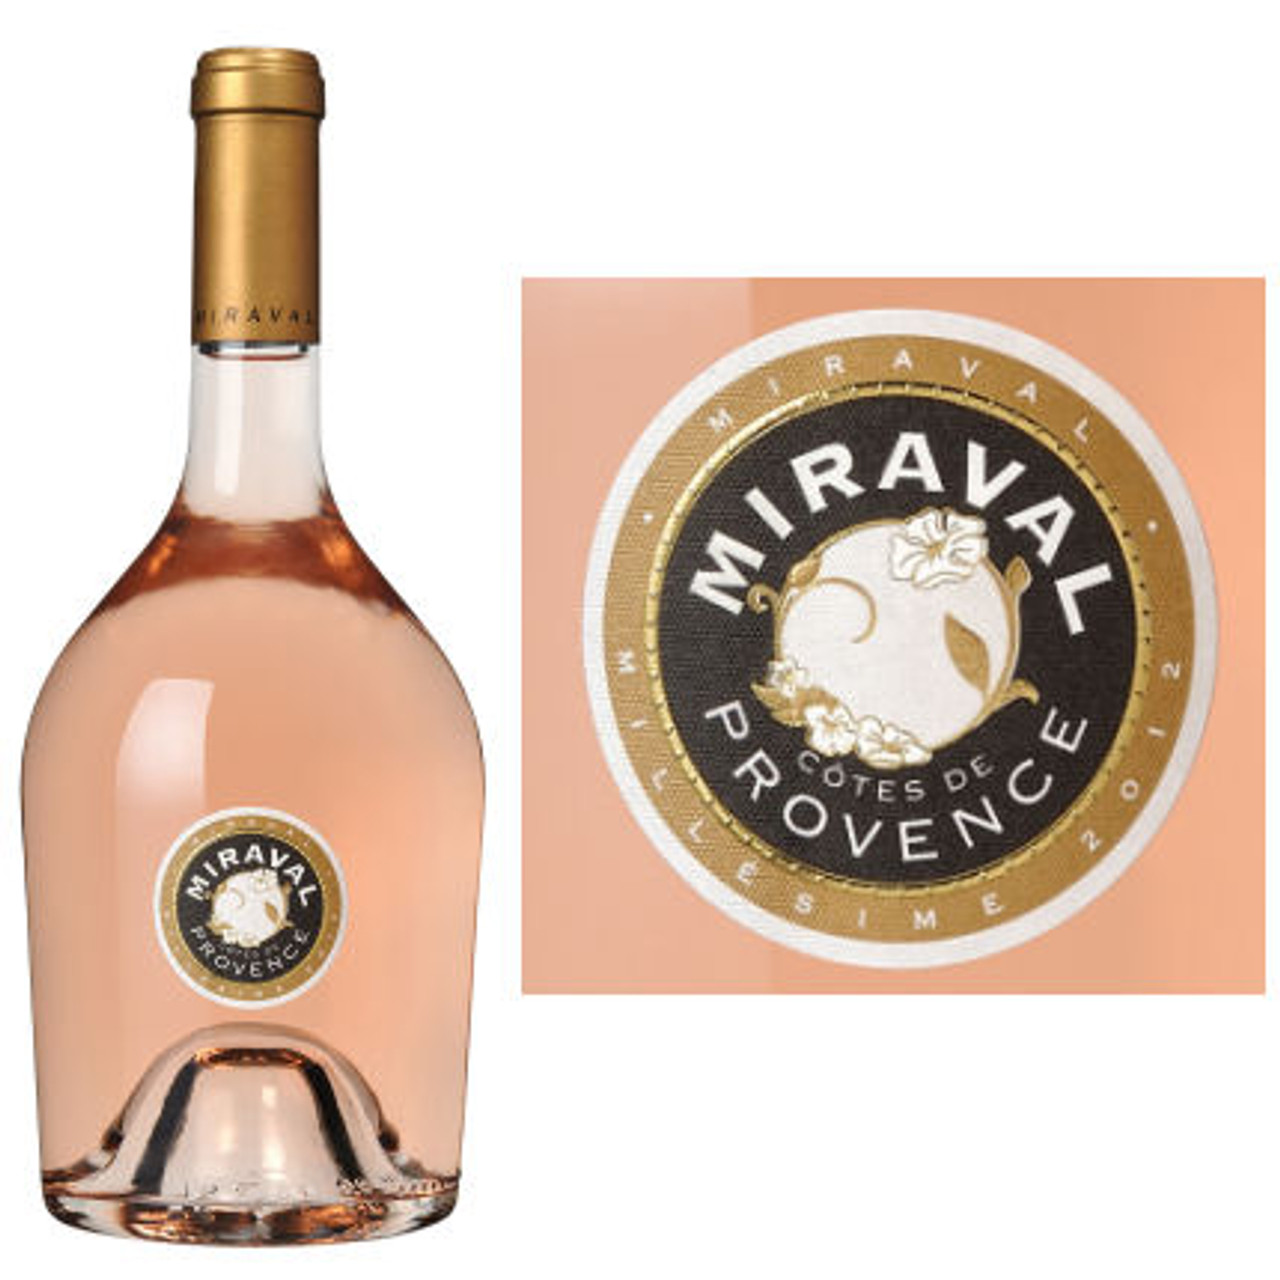 Miraval Cotes de Provence Rose